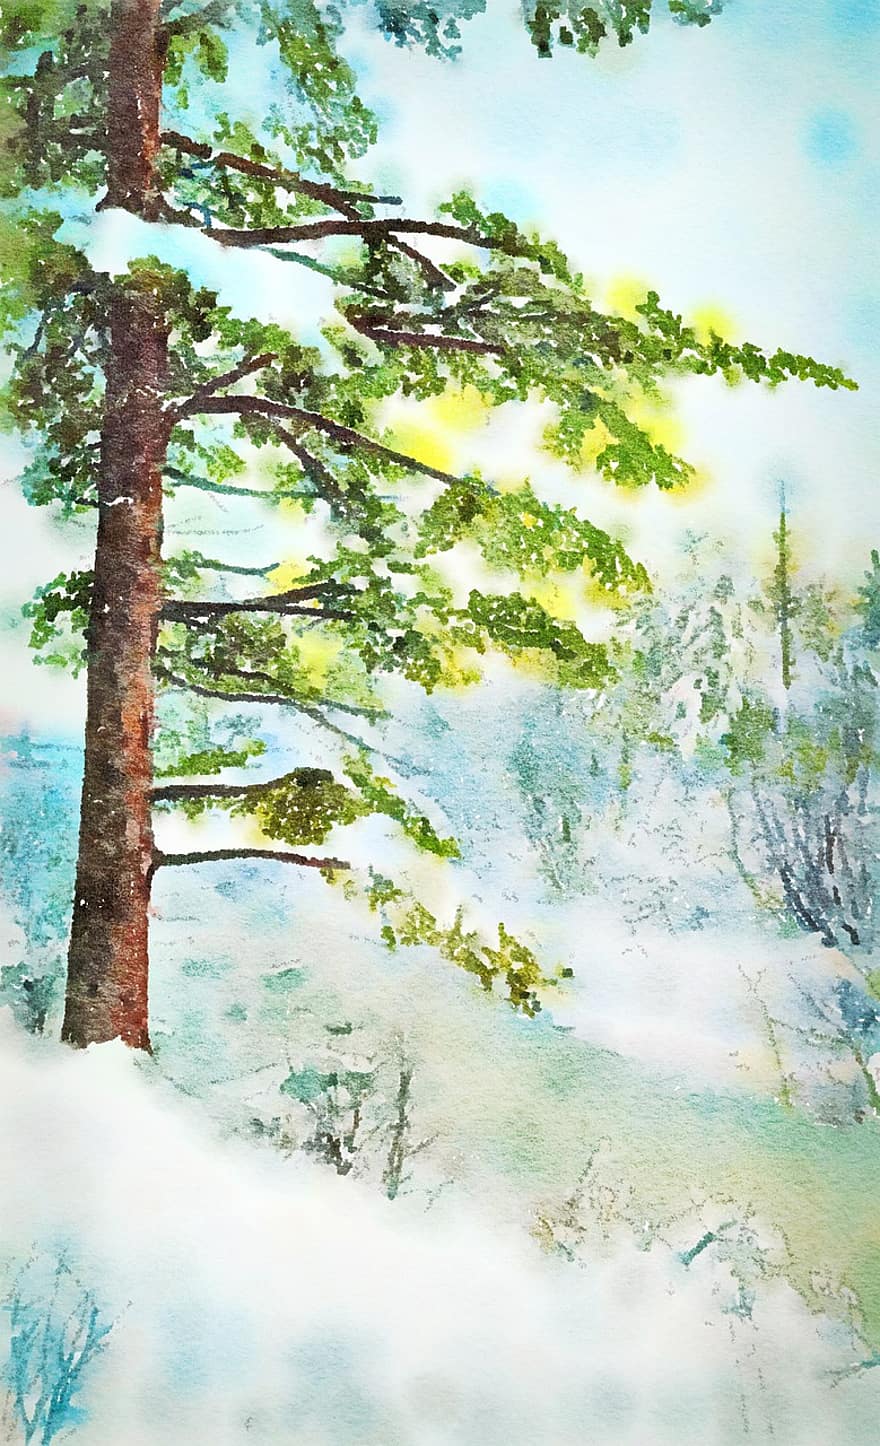 δάσος, δέντρα, χιόνι, χιονώδης, χειμερινός, πάγος, κρύο, χειμώνας, φύση, Χριστούγεννα, χιονόπτωση